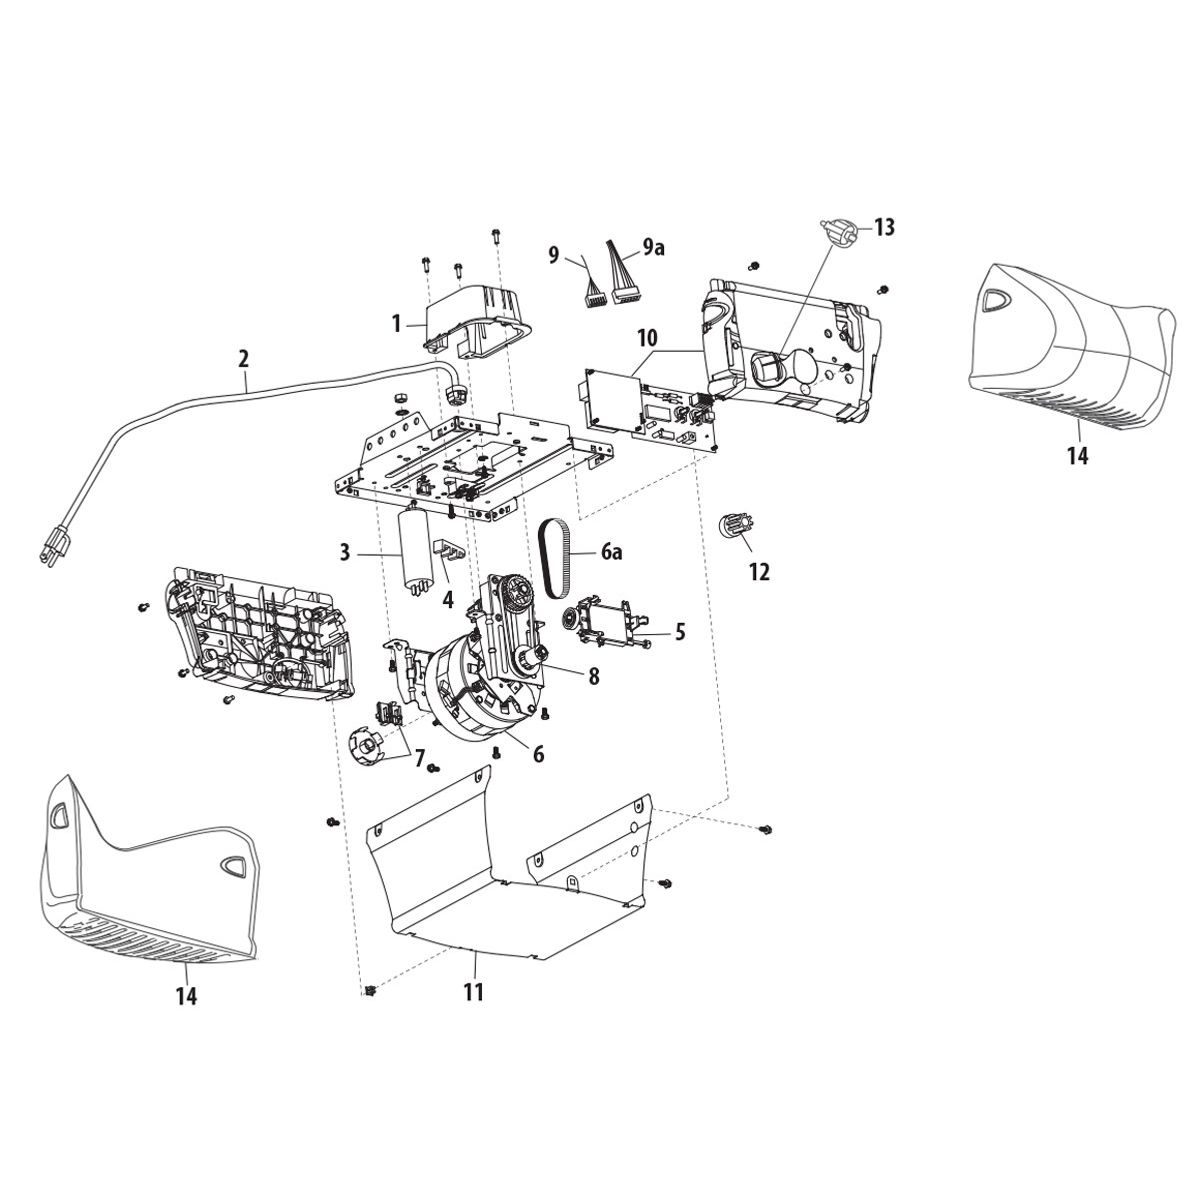 Wiring Diagram Info: 26 Liftmaster Garage Door Sensor Wiring Diagram